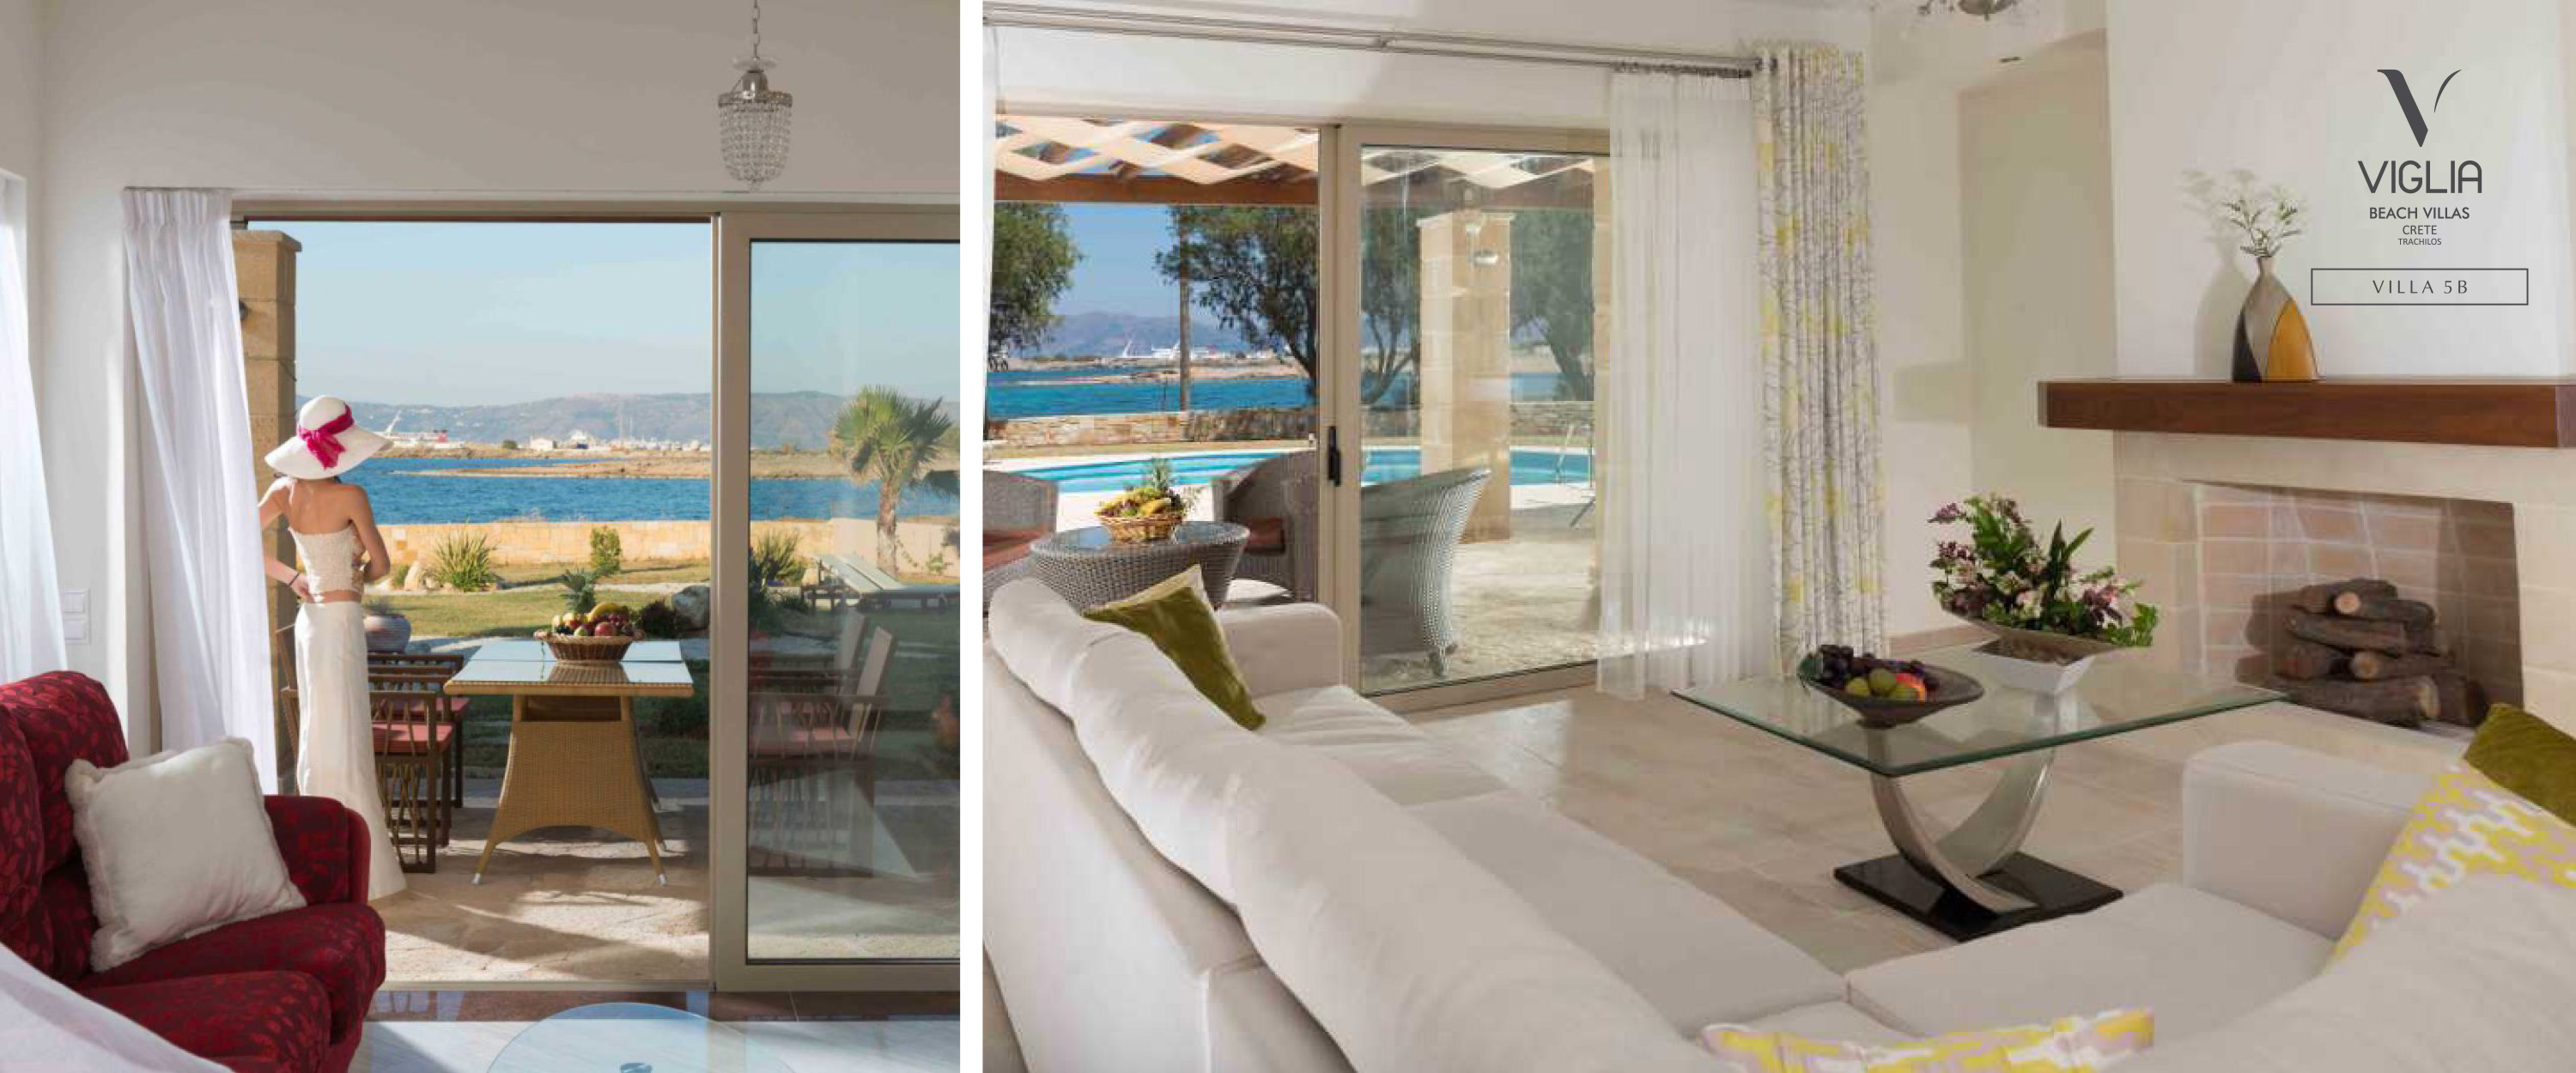 Viglia Beach Villas 3 +1 bedroom Villa  at  